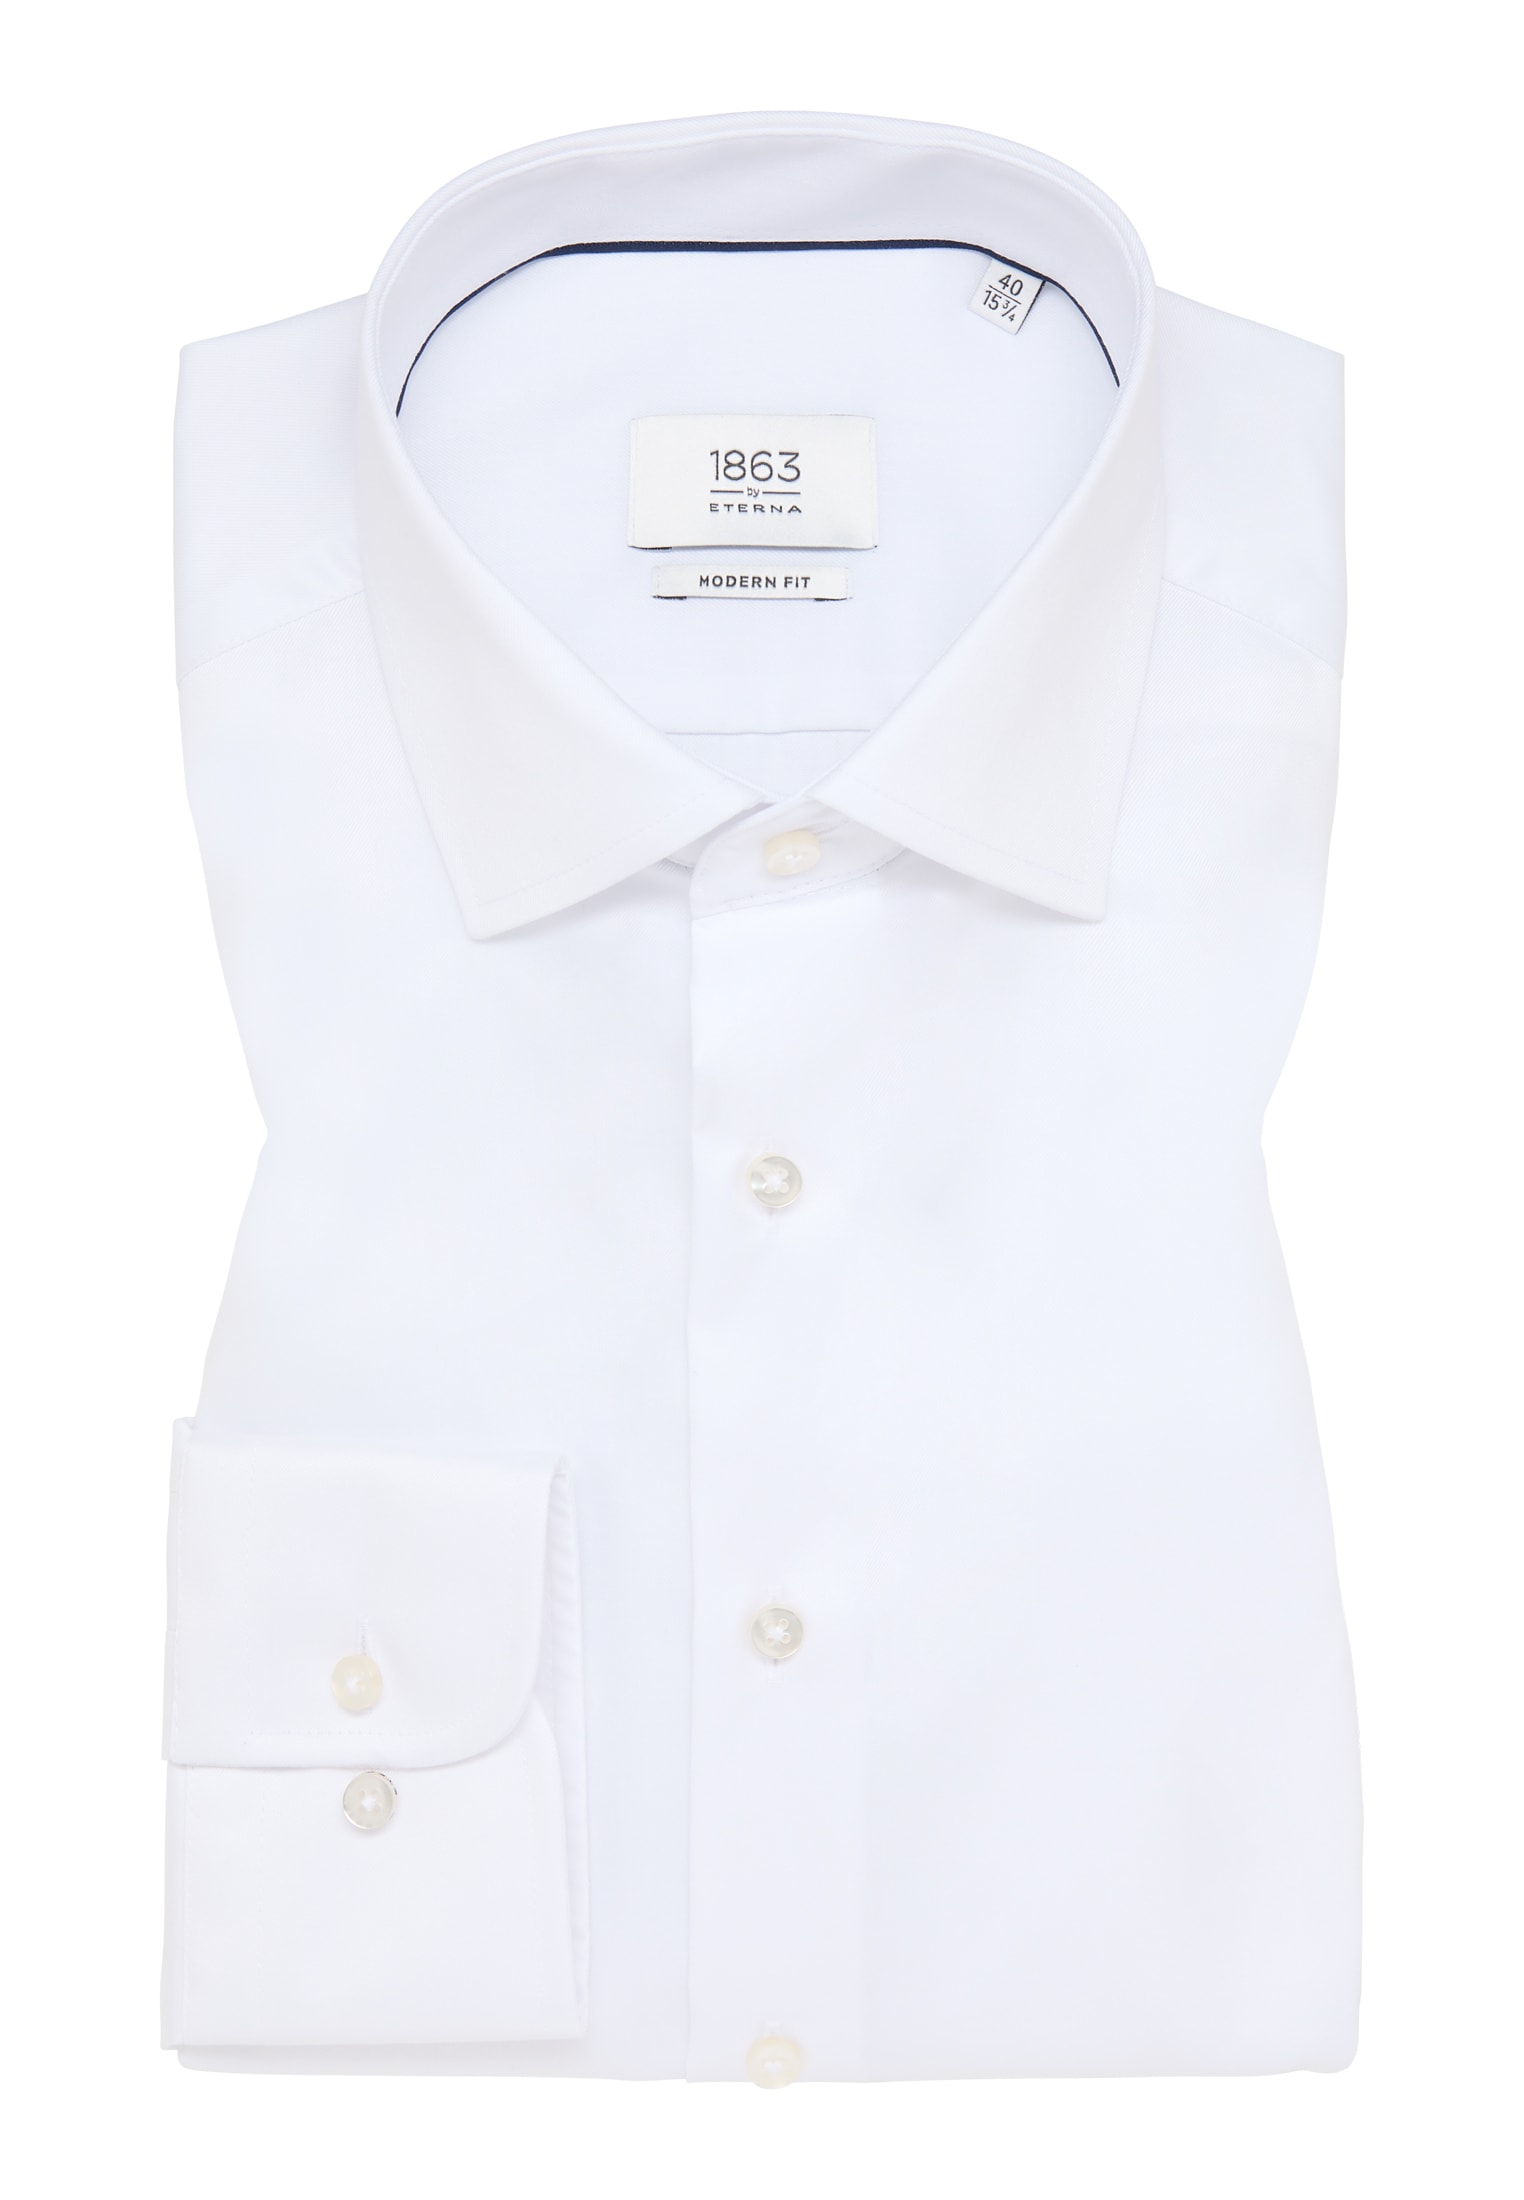 MODERN FIT Luxury Shirt in | cm) | | weiß unifarben Arm 42 weiß 1SH04302-00-01-42-68 (68 | verlängerter